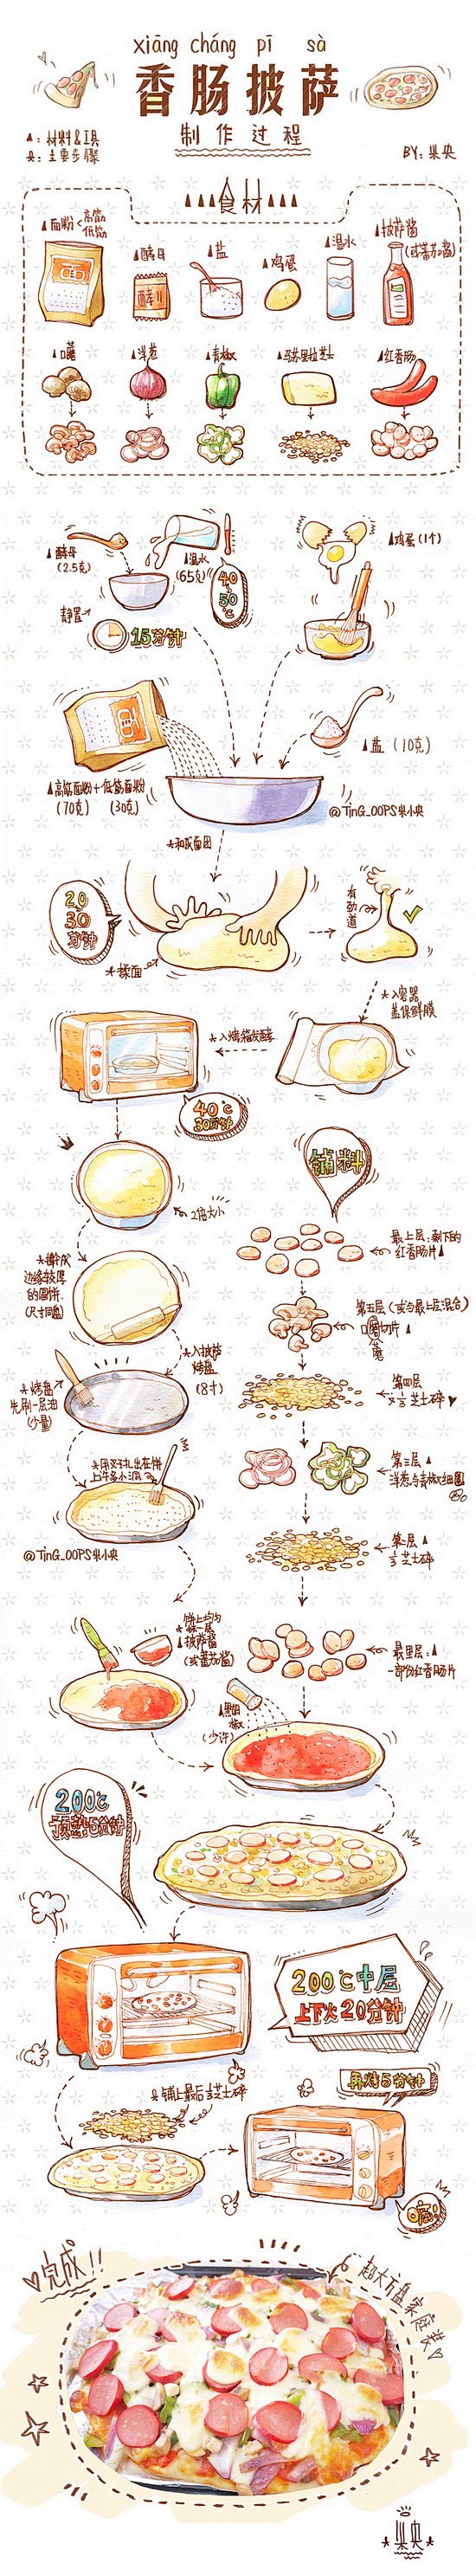 手绘烘焙美食教程 (2)